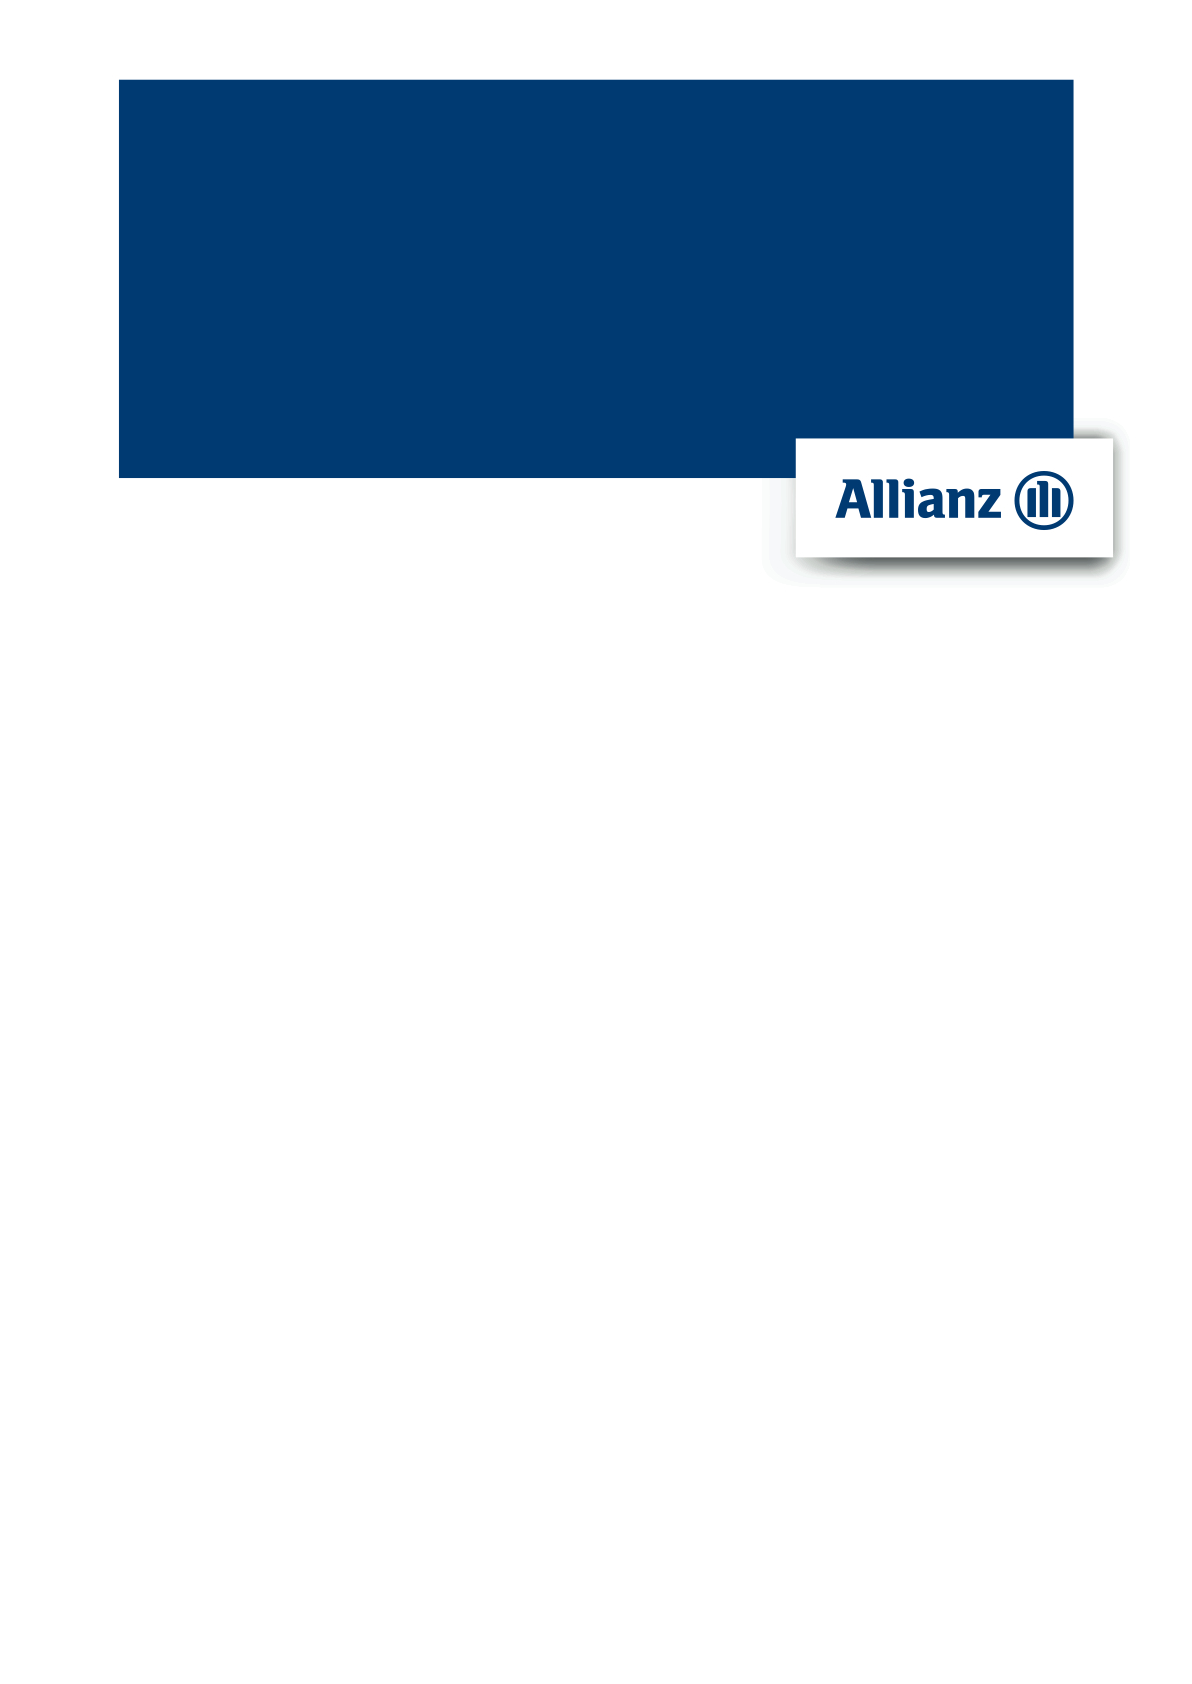 Kondíciós lista Lakossági ügyfelek részére Allianz ATM Plusz bankszámla és hozzá kapcsolódó